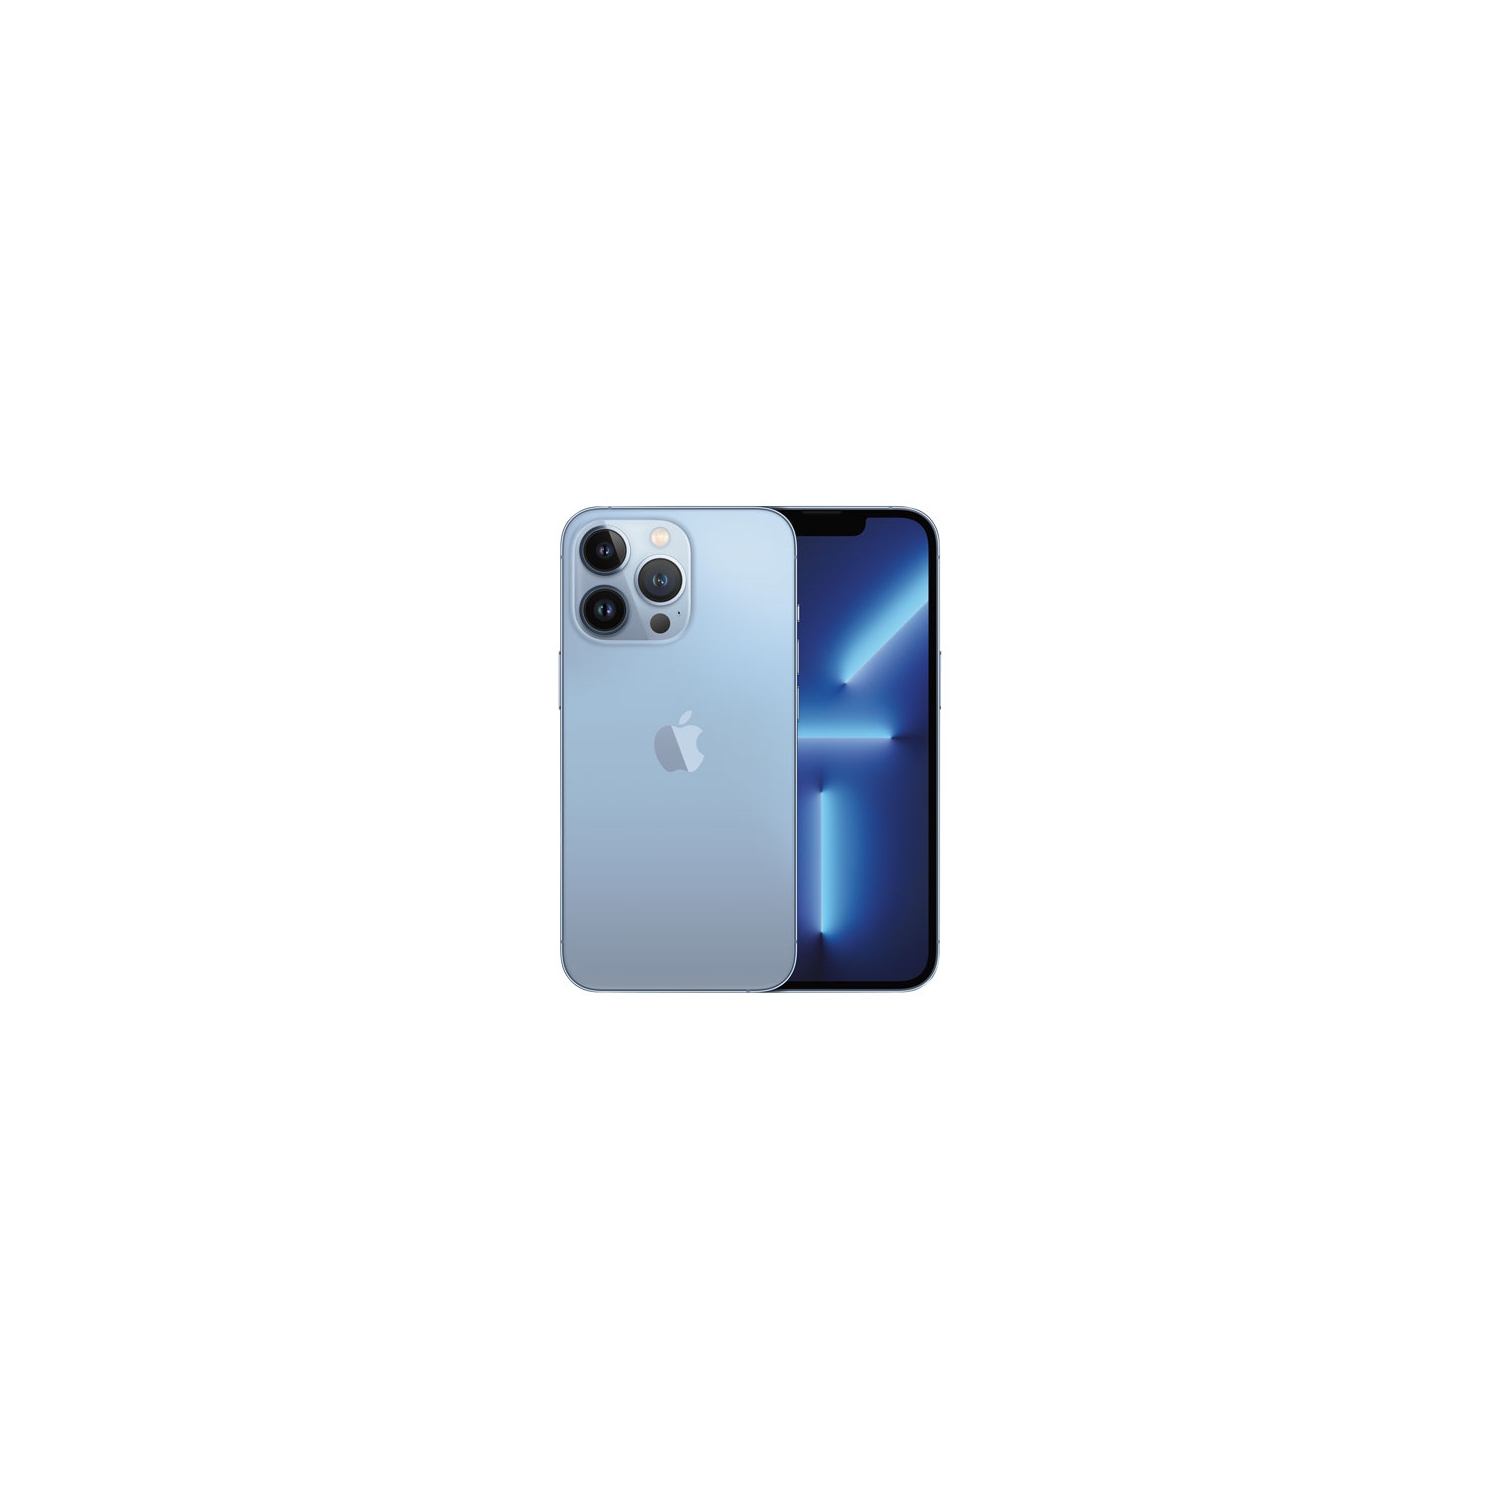 Apple iPhone 13 Pro 256GB - Sierra Blue - Unlocked - Open Box